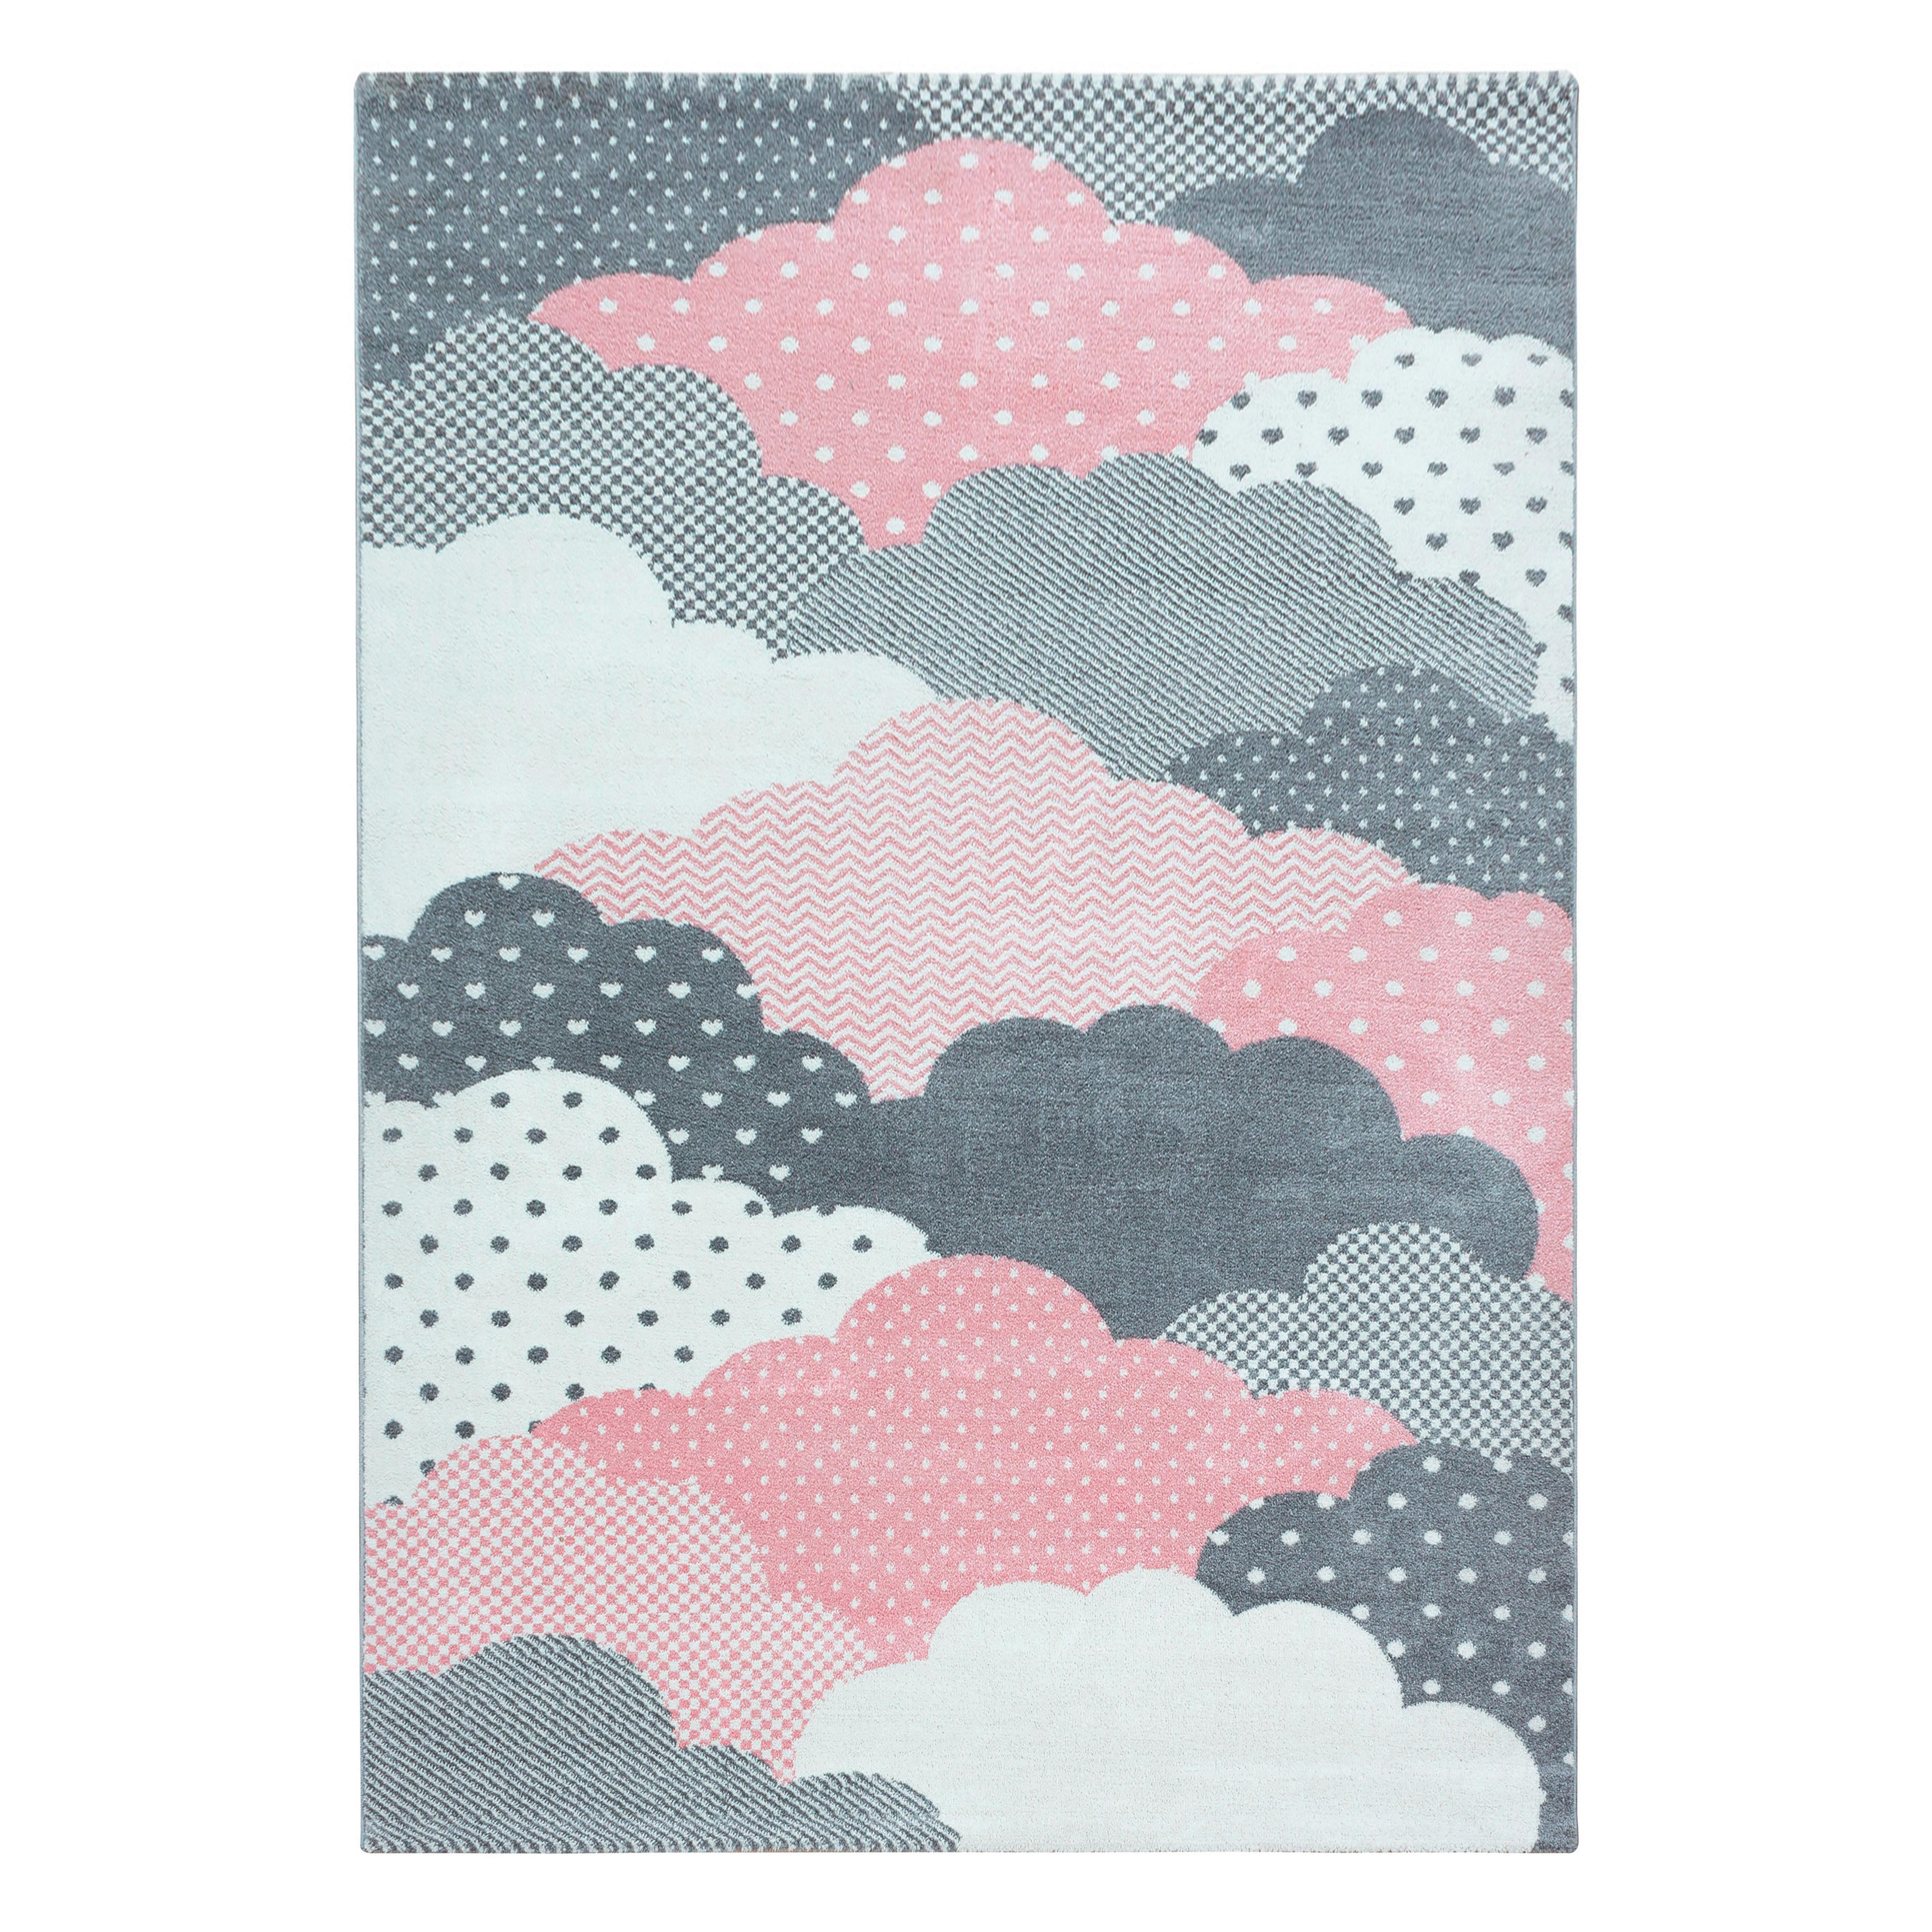 Detský Koberec Oblaky 140x200 - pink, Trend, textil (140/200cm) - Ben'n'jen